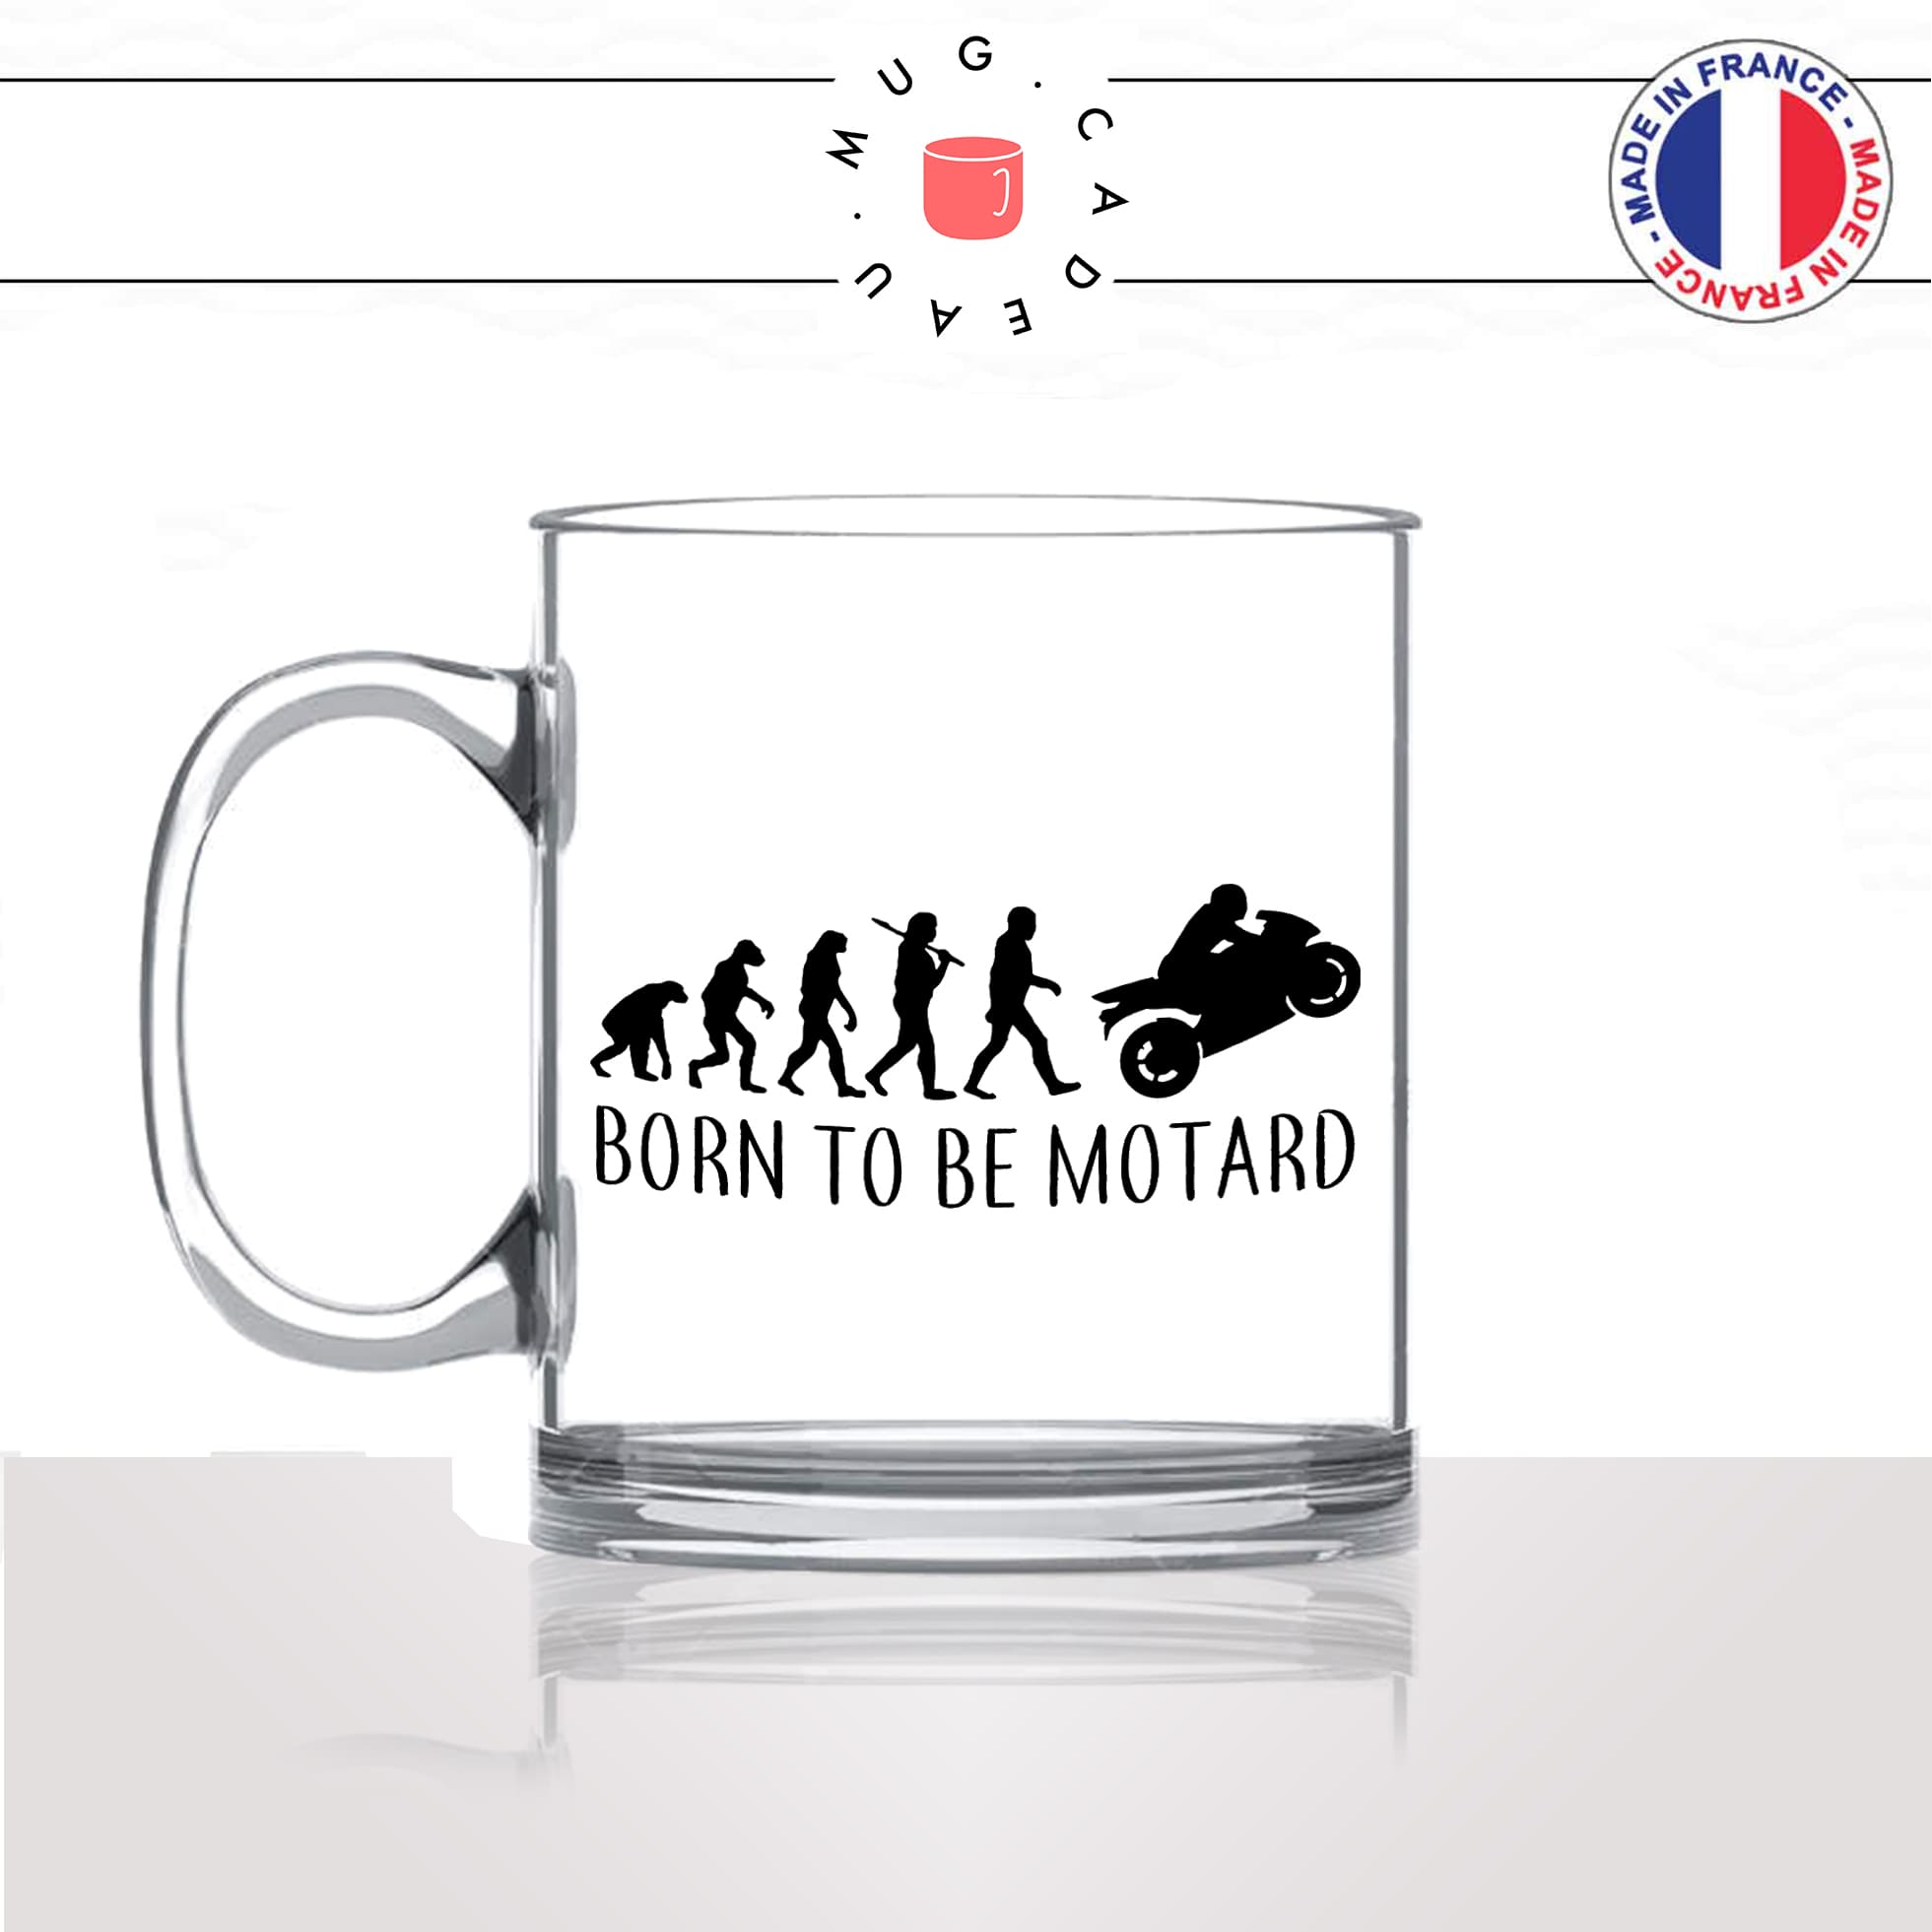 mug-tasse-en-verre-transparent-glass-born-to-be-motard-moto-passion-evolution-humaine-singe-primate-humour-idée-cadeau-fun-cool-café-thé